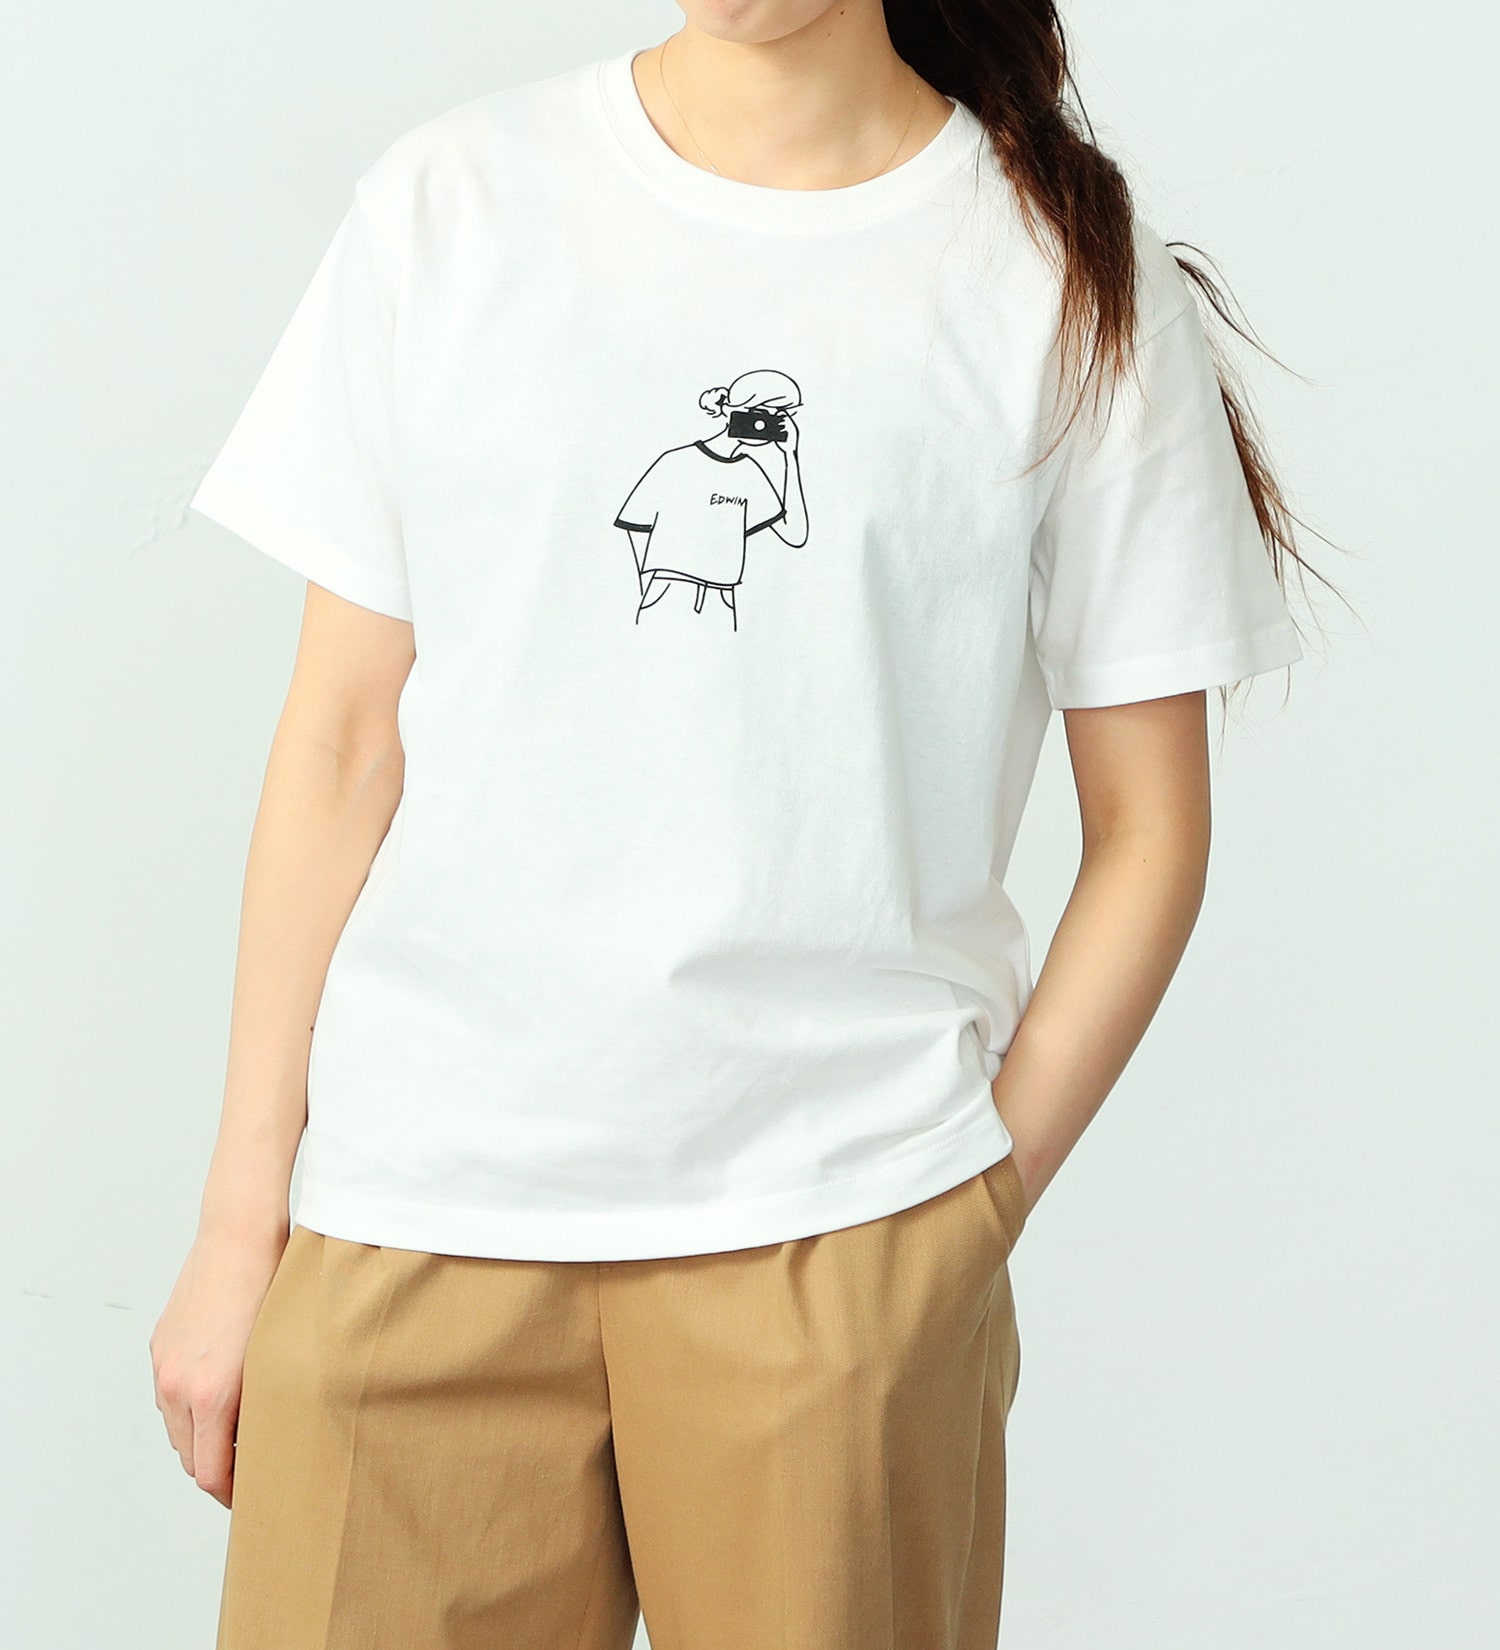 EDWIN(エドウイン)のイラストプリントTシャツ【アウトレット店舗・WEB限定】|トップス/Tシャツ/カットソー/レディース|ホワイト